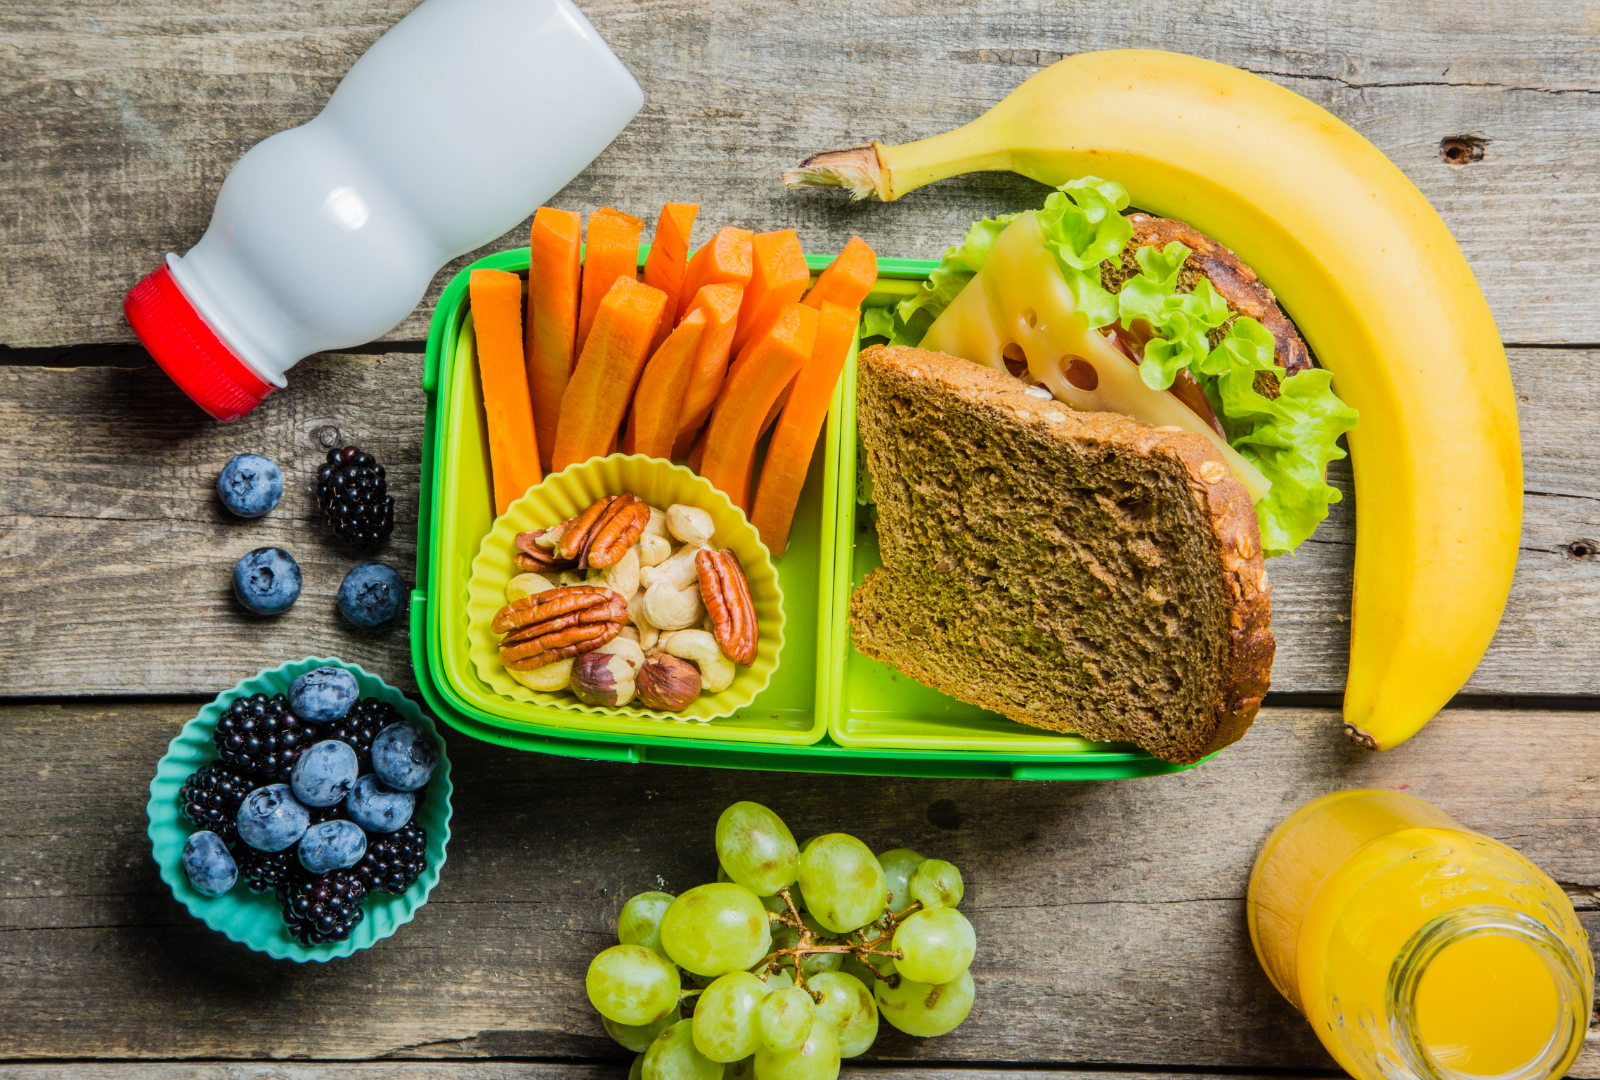 אוכל בריא לילדים – מדריך ההורים למזונות, טיפים ומתכונים